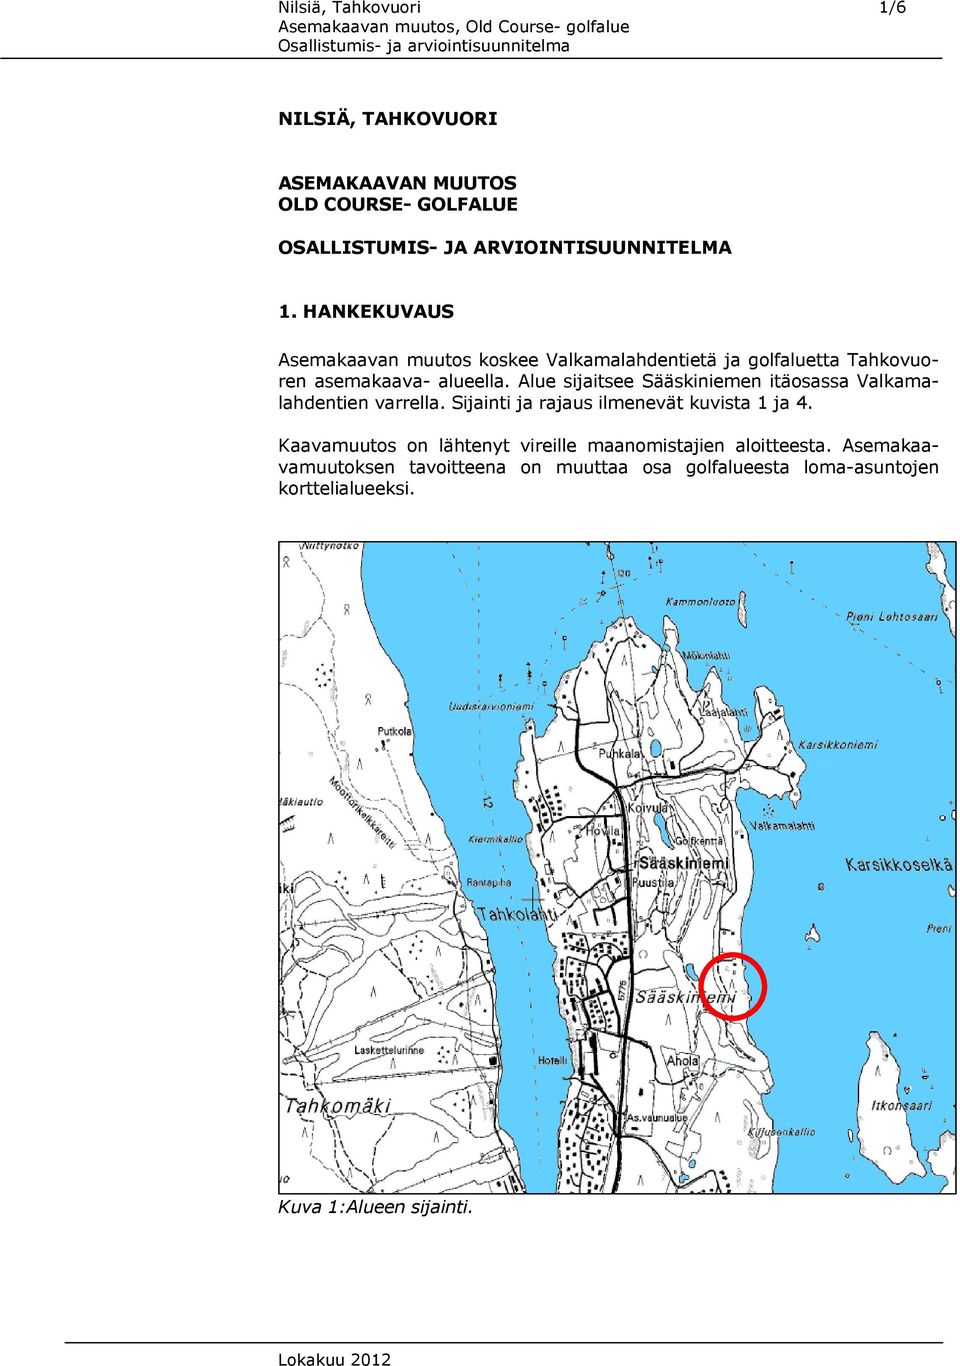 Alue sijaitsee Sääskiniemen itäosassa Valkamalahdentien varrella. Sijainti ja rajaus ilmenevät kuvista 1 ja 4.